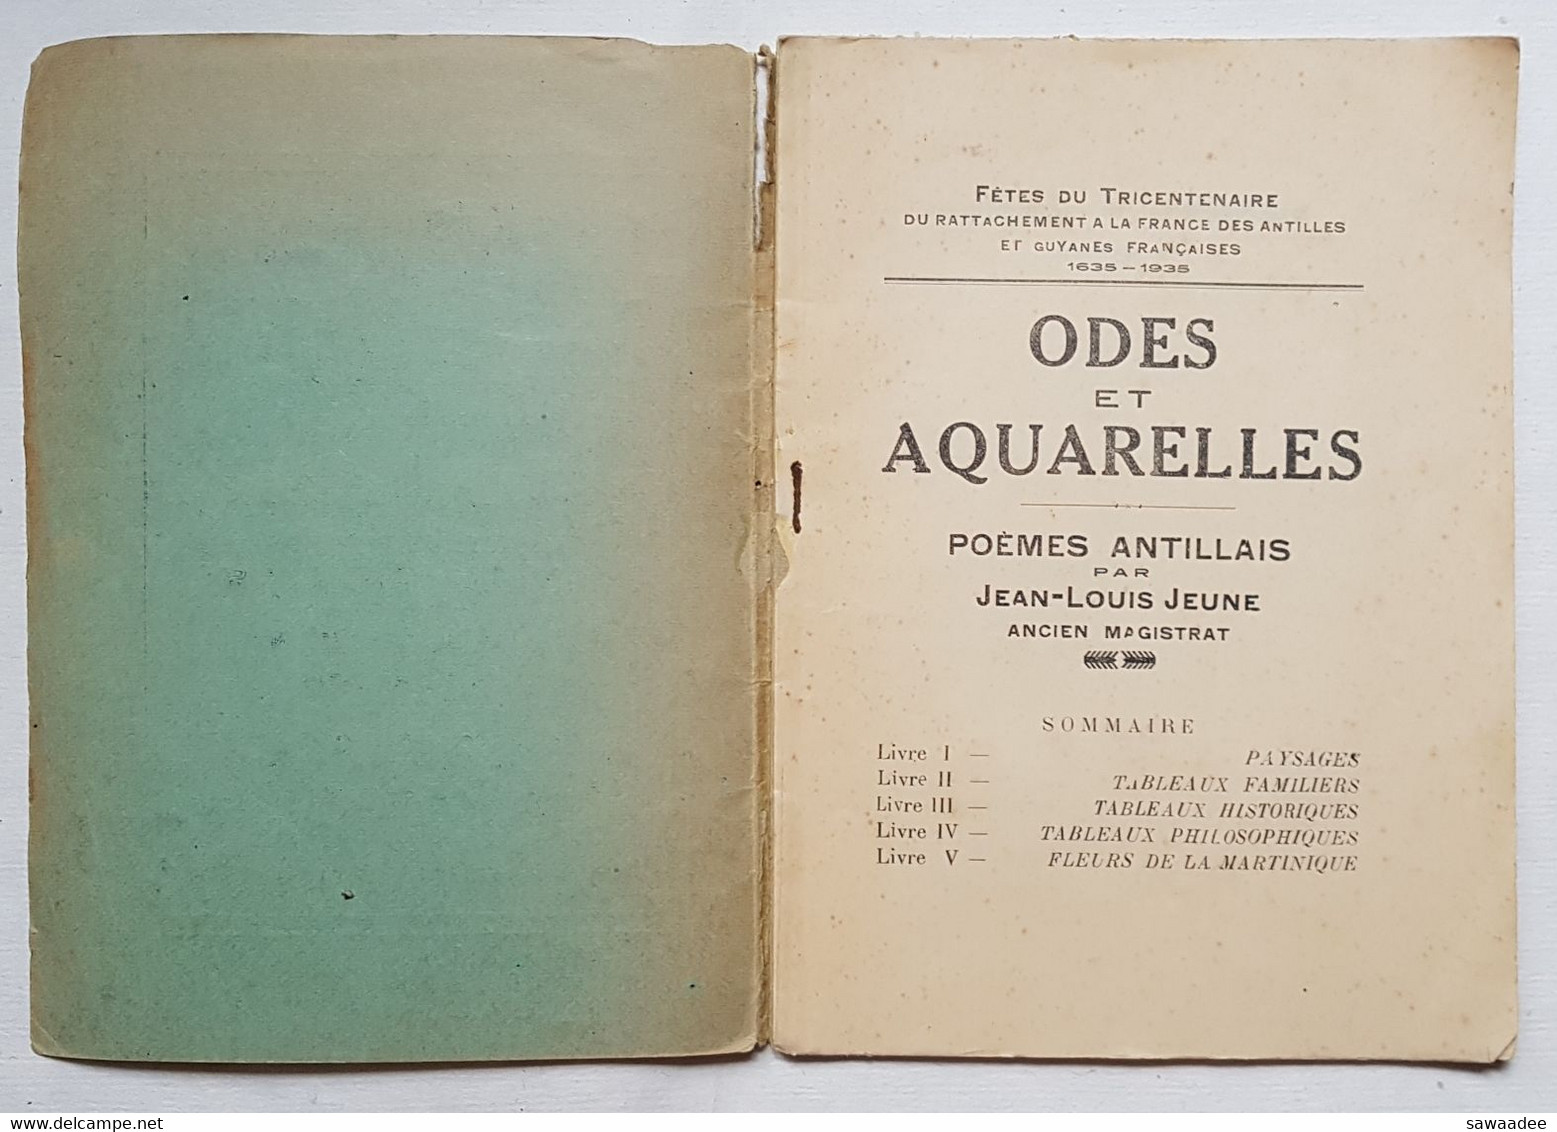 LIVRE - ANTILLES - ARTS - ODES ET AQUARELLES - POEMES ANTILLAIS - J.L. JEUNE - FORT DE FRANCE - 1935 - Outre-Mer